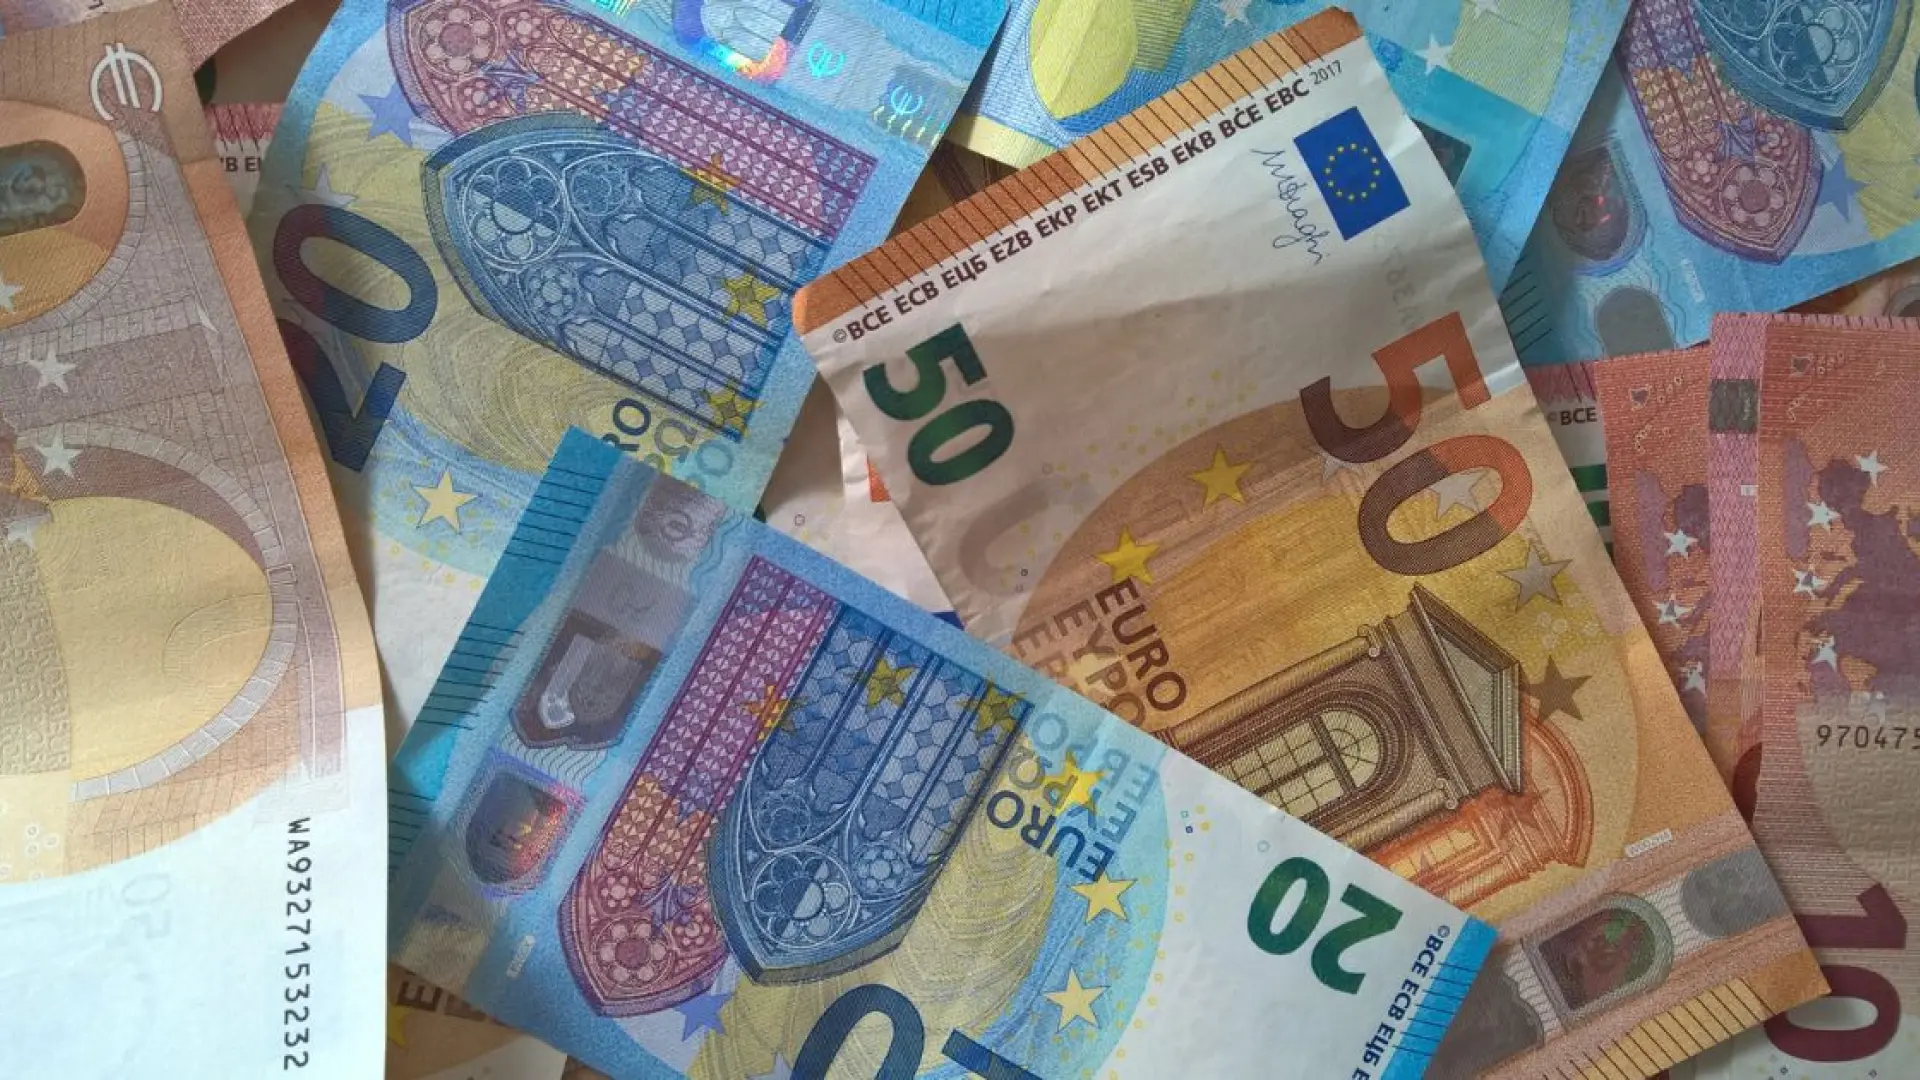 Prórroga del SMI: 2024 comienza sin subida, en 1.080 euros